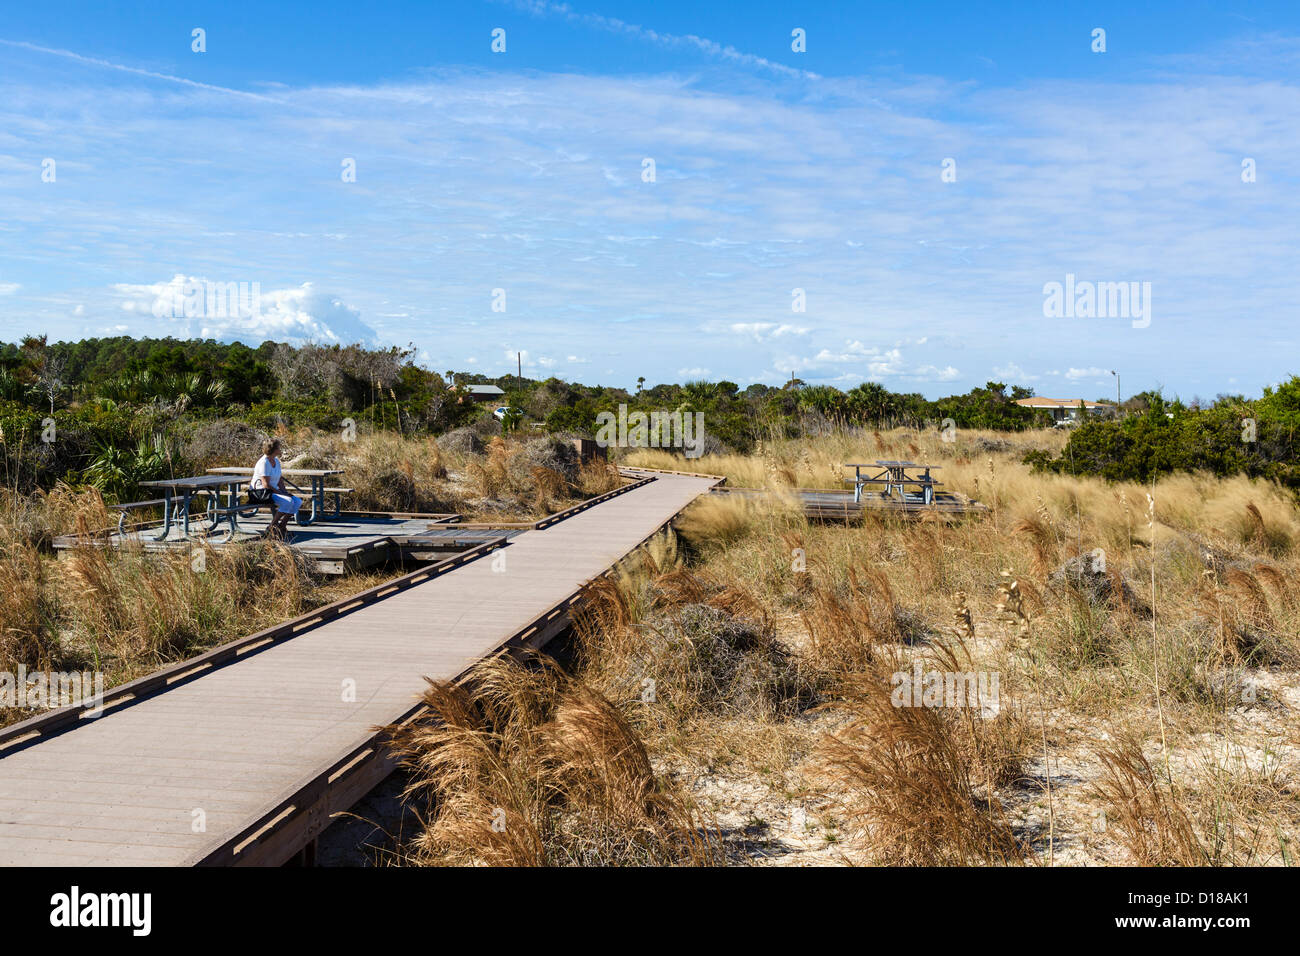 Promenade à la plage de Fort Clinch State Park, Fernandina Beach, Amelia Island, Floride, USA Banque D'Images